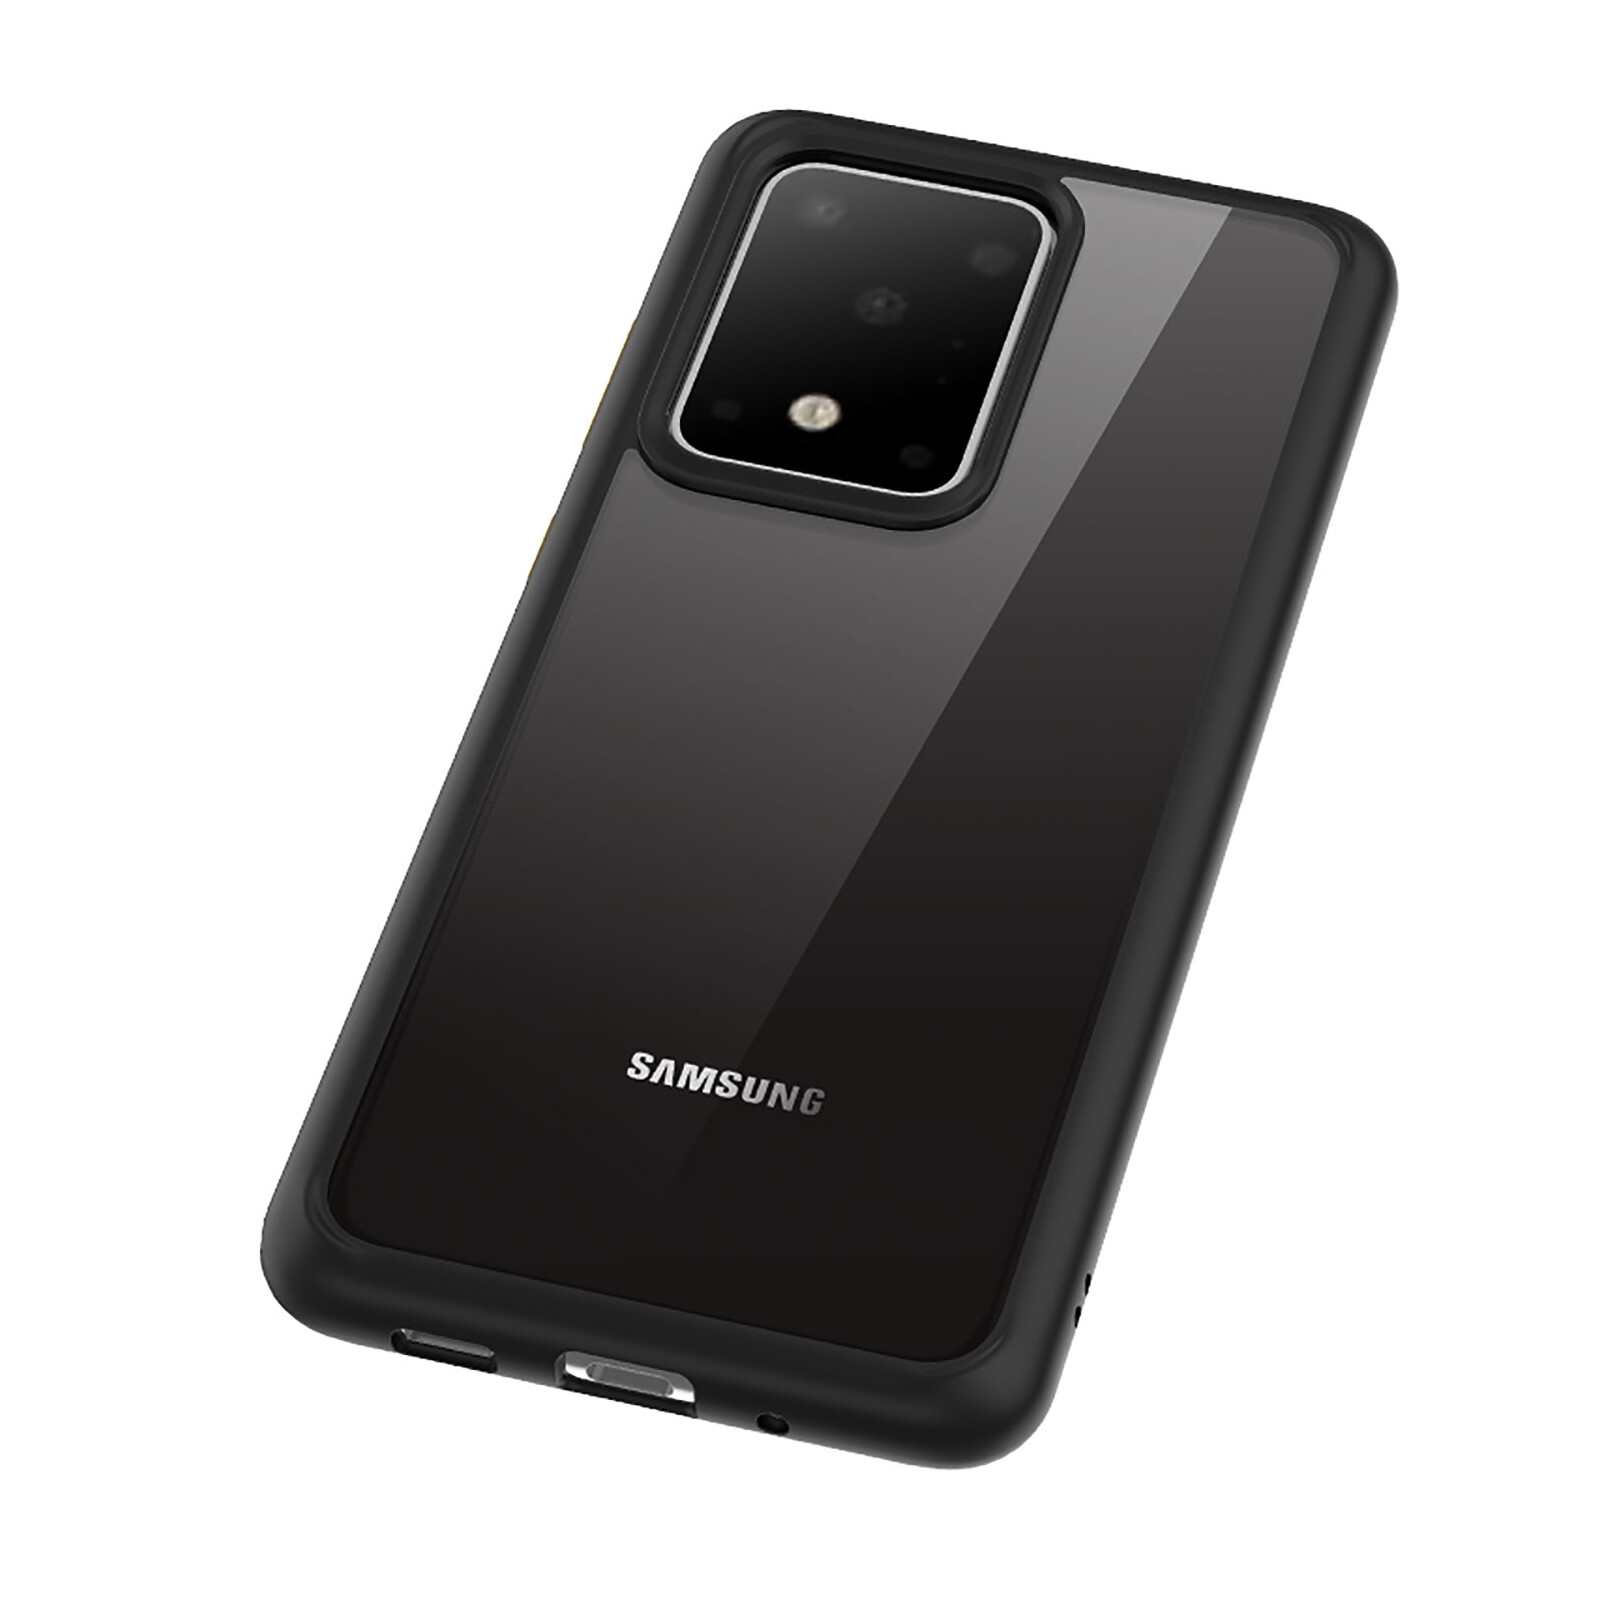 Felixx Backcover Hybrid Samsung Galaxy S20 Ultra